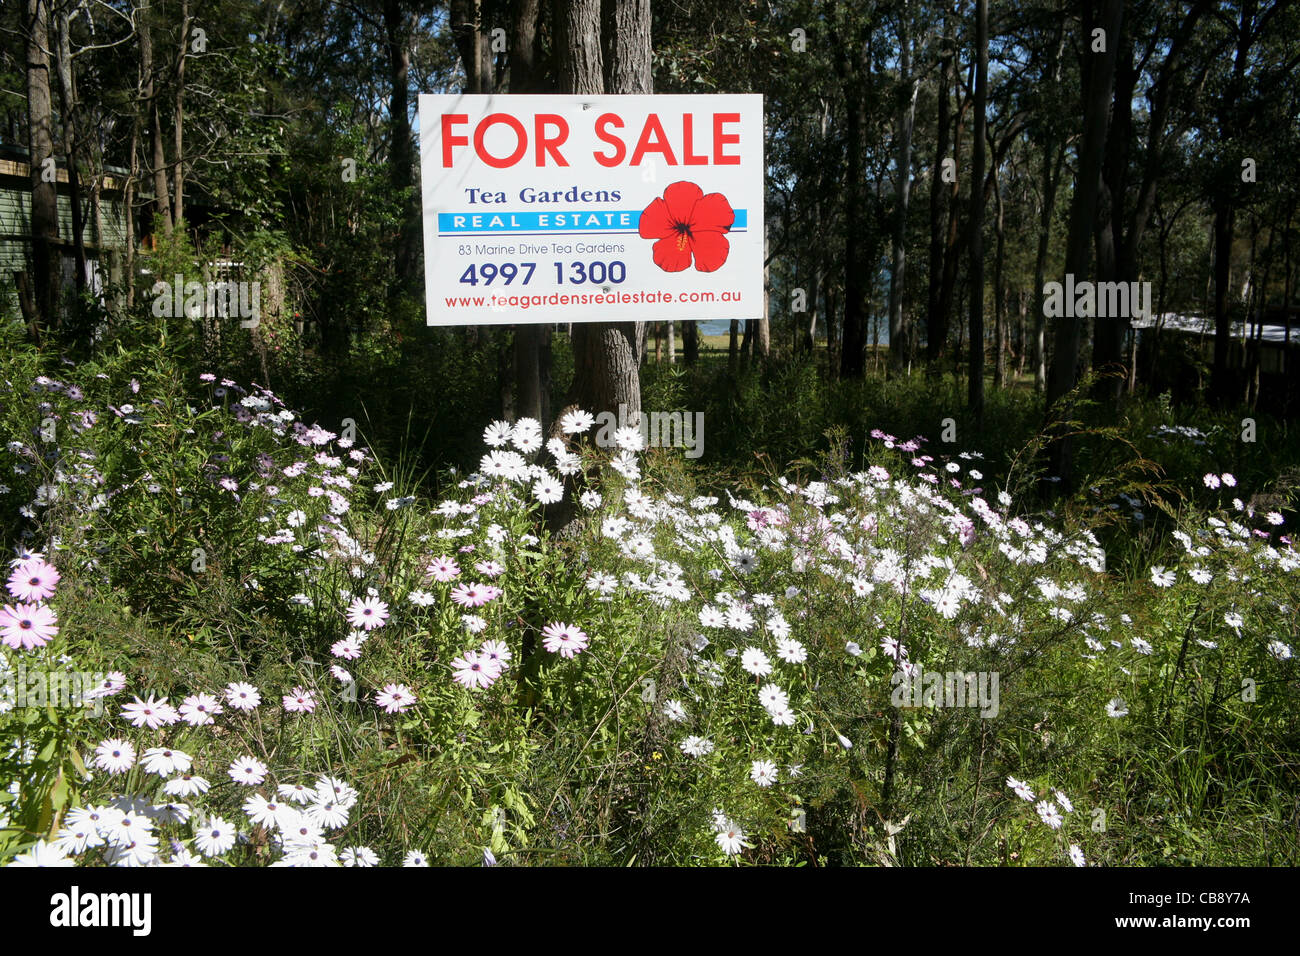 Zum Verkauf Schild auf einem Block von Land mit Frühlingsblumen, Tea Gardens, NSW Australien Stockfoto